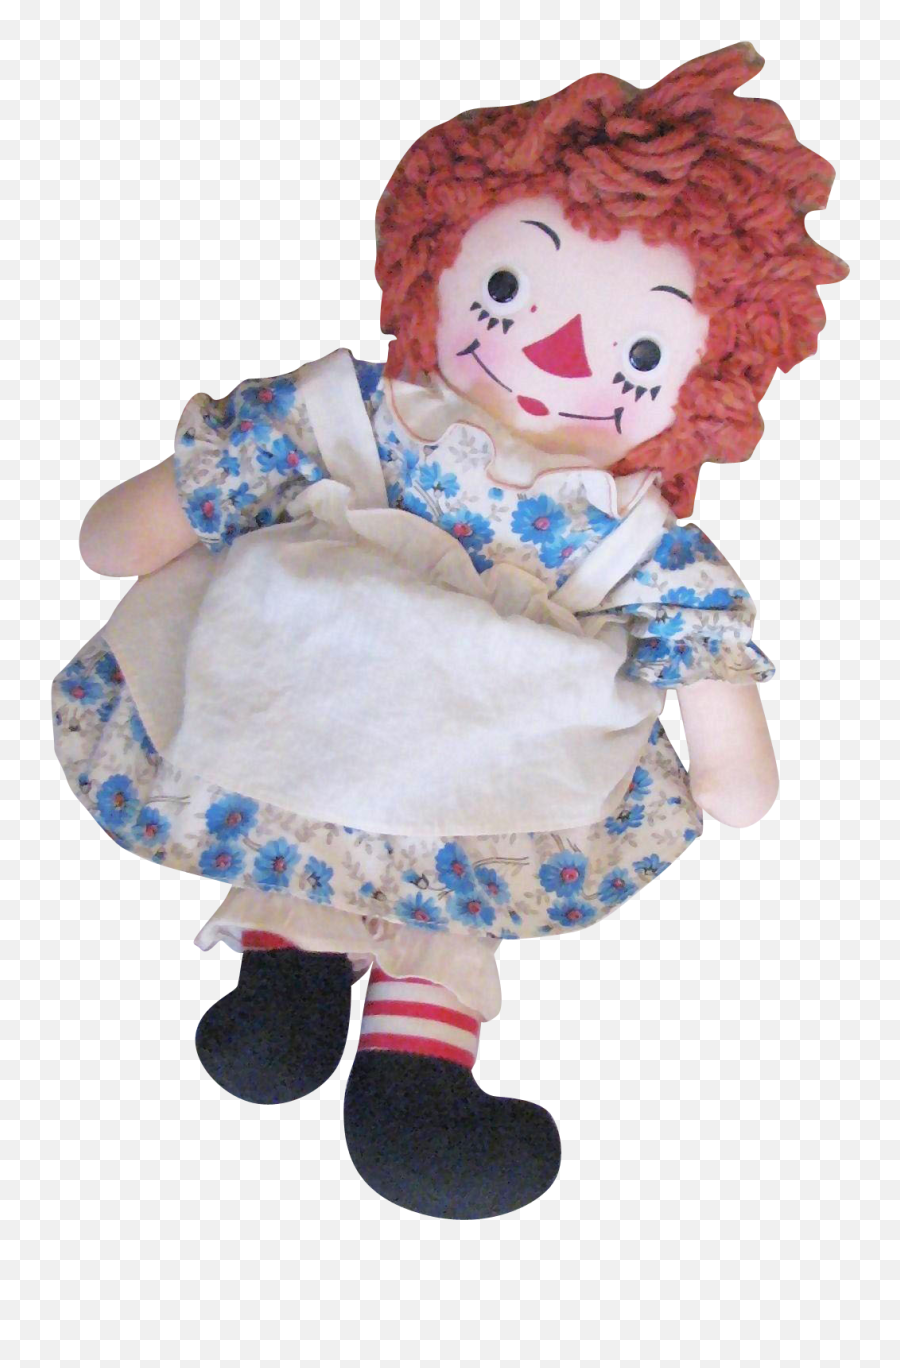 86 Raggedy Ann And Andy Dolls Ideas Raggedy Ann And Andy Emoji,Mattel Emotions Large Rag Doll